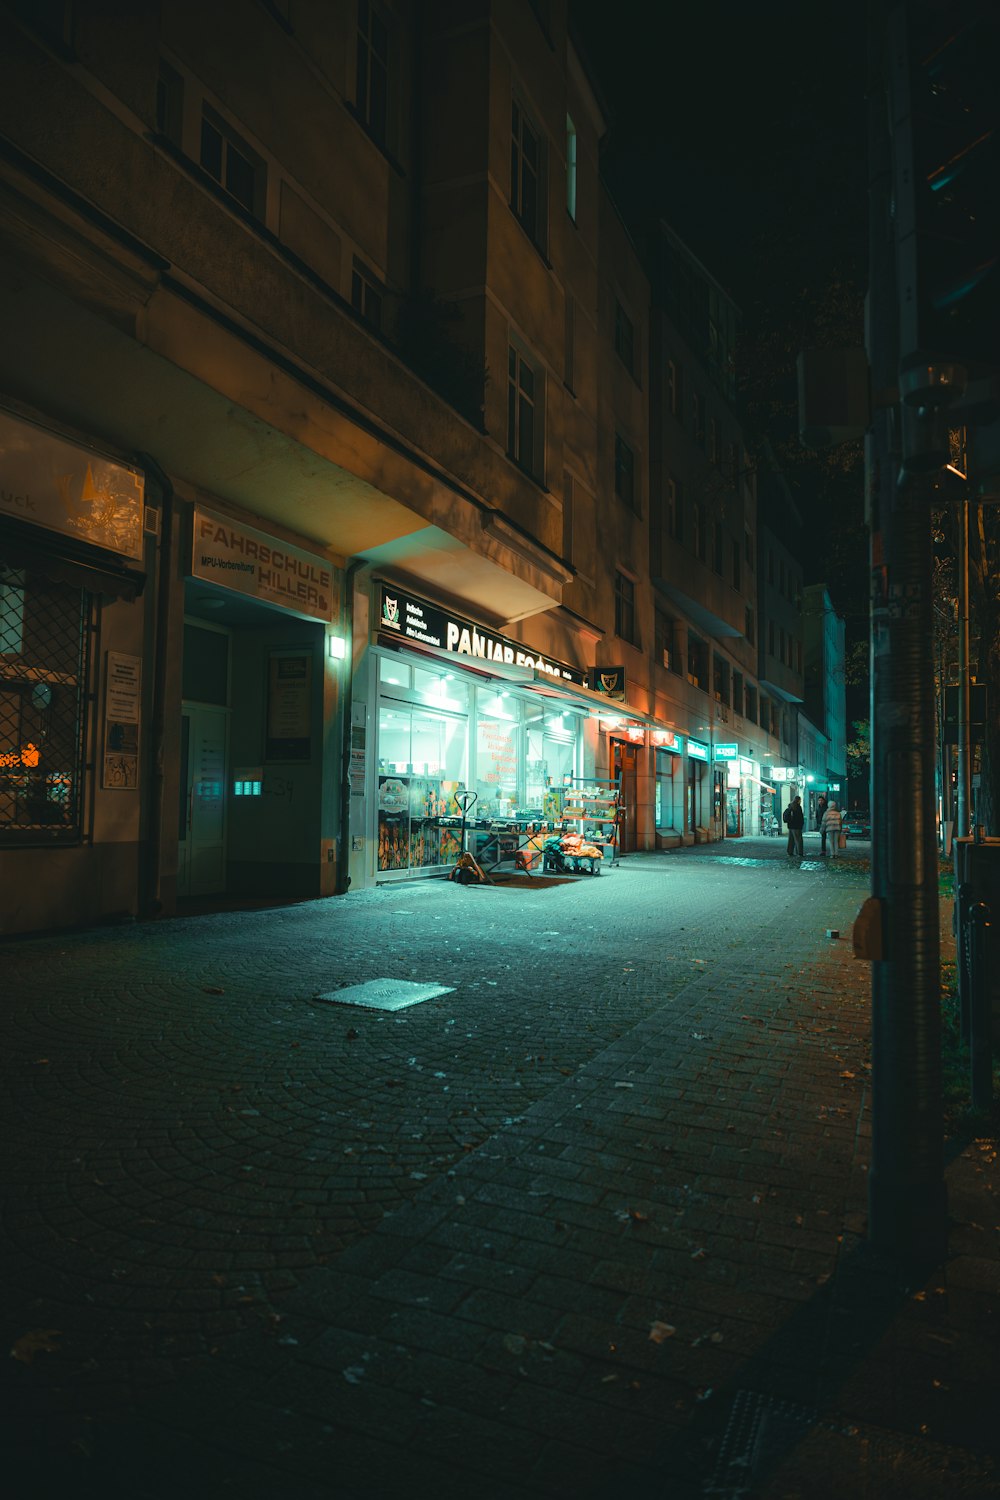 Eine dunkle Stadtstraße bei Nacht mit einer Ladenfront